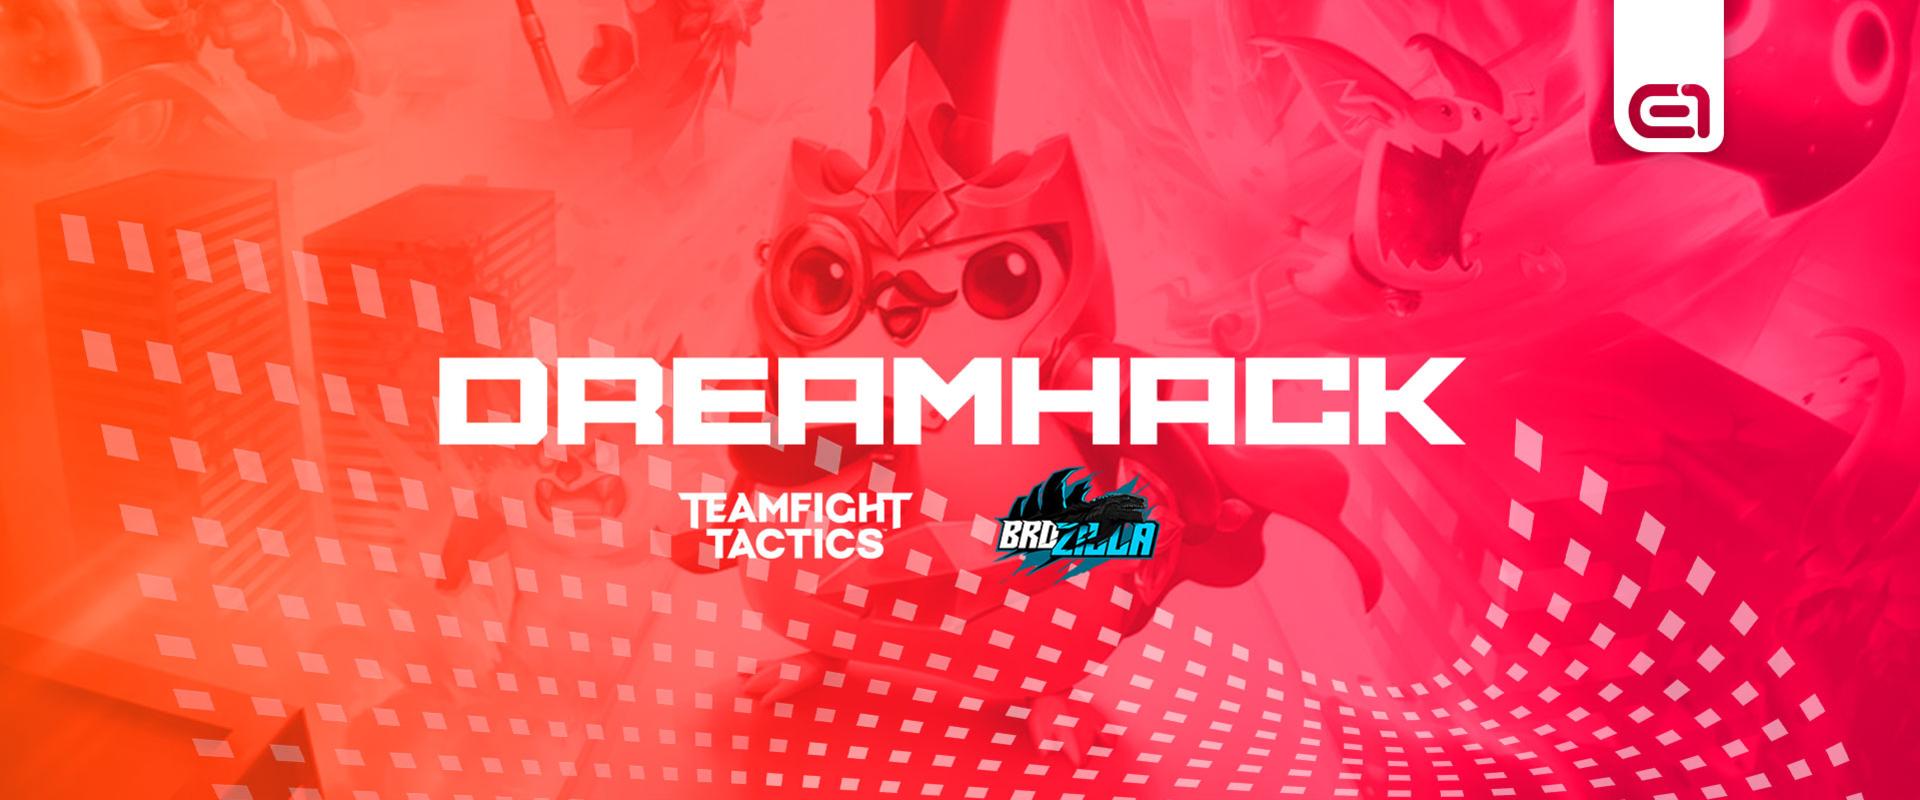 Dreamhack versenyen a magyar TFT játékos - Kövessétek velünk ti is!